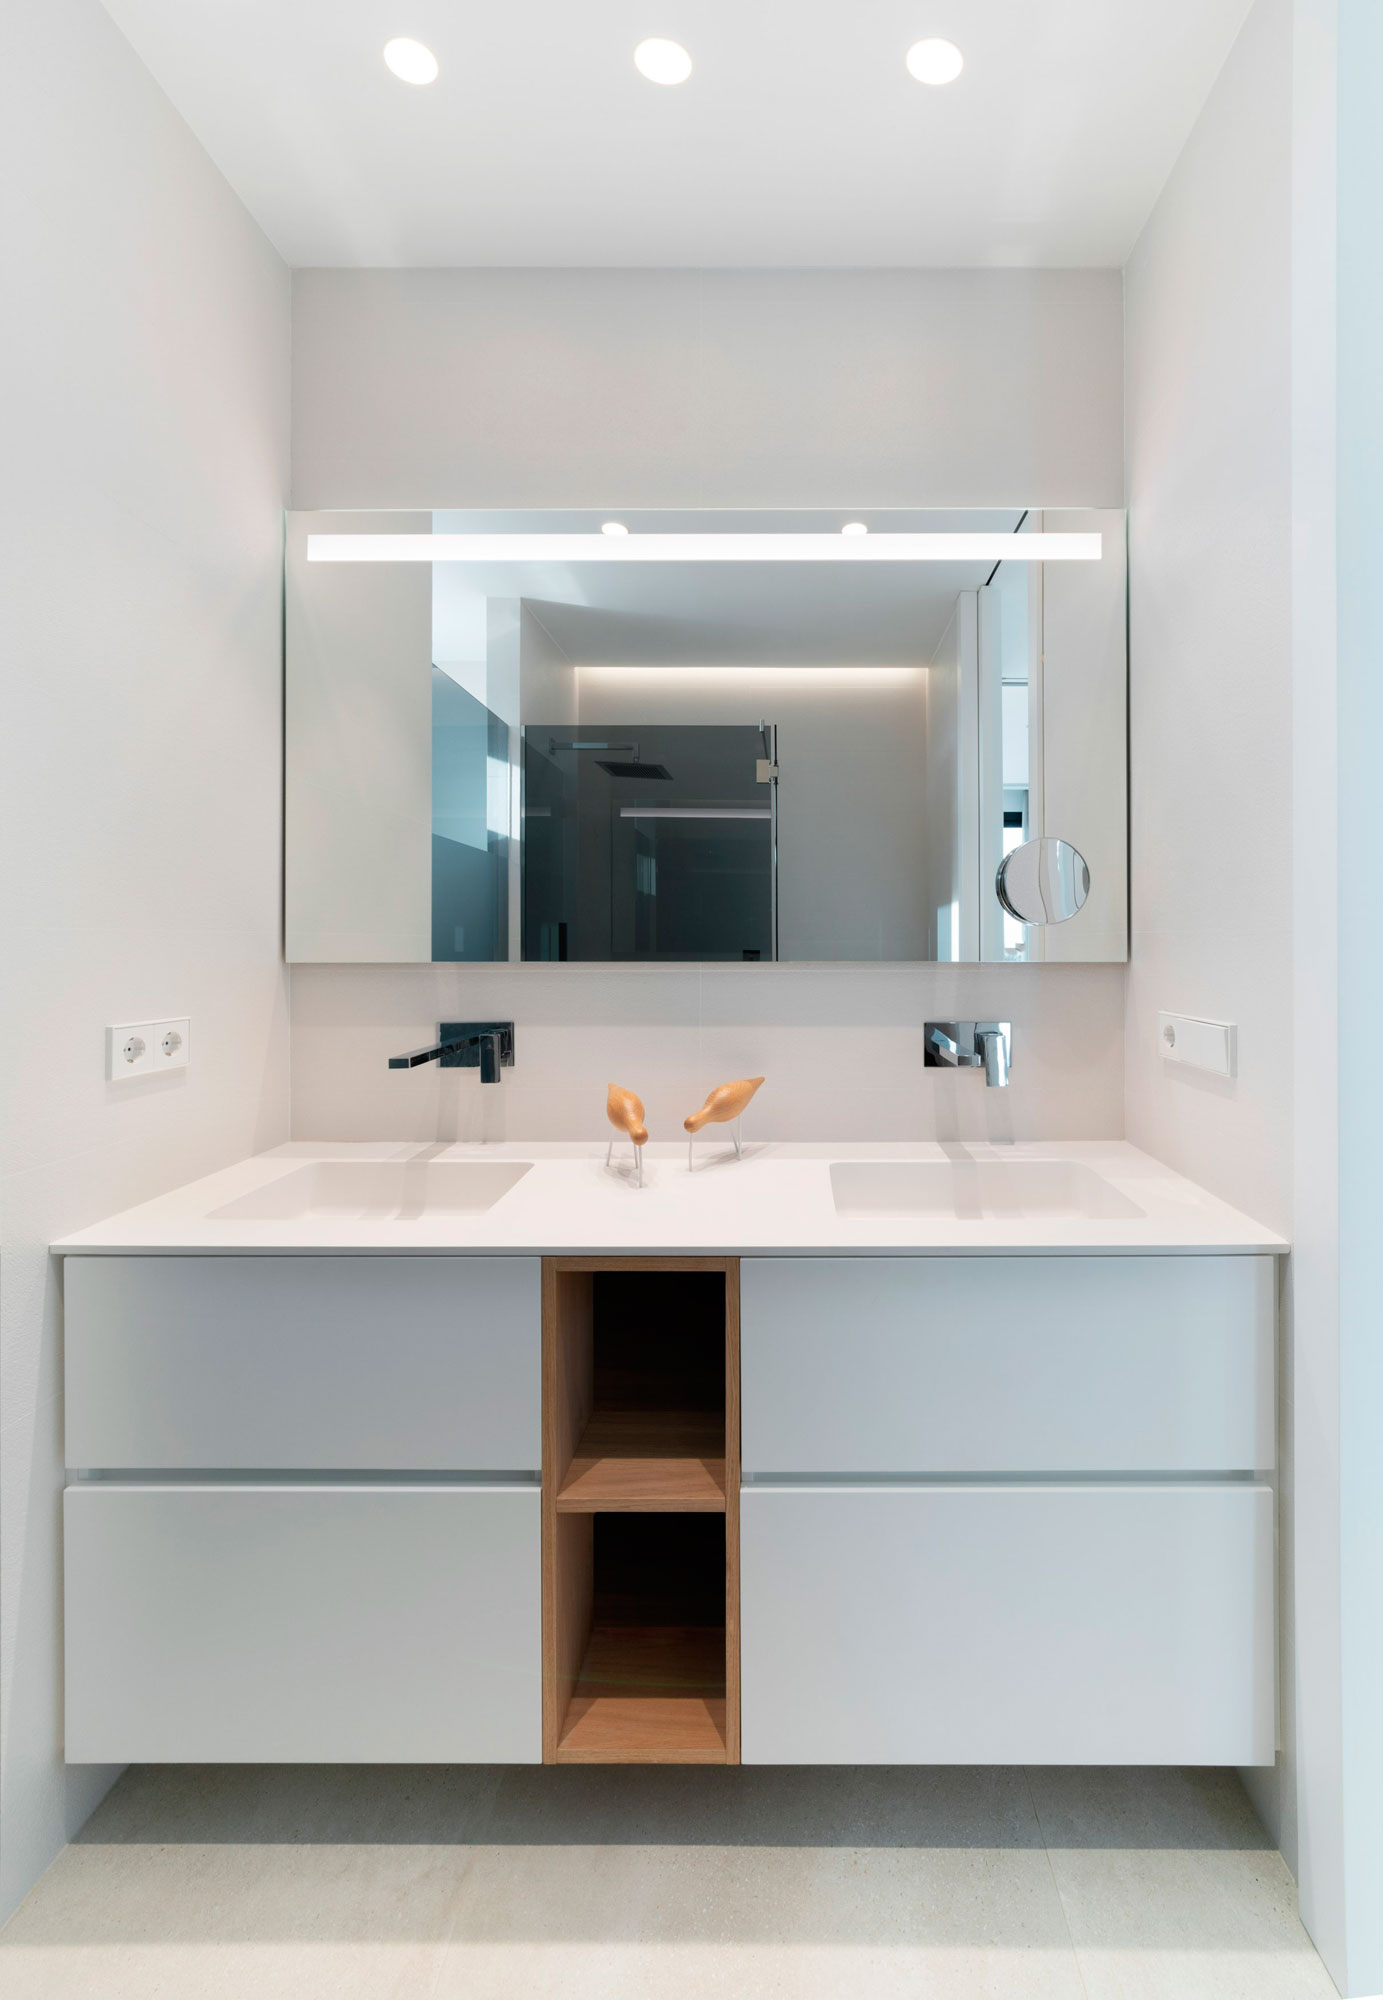 interiorismo arquitectura vivienda unifamiliar carlet diseño chalet mobiliario baño cortesia